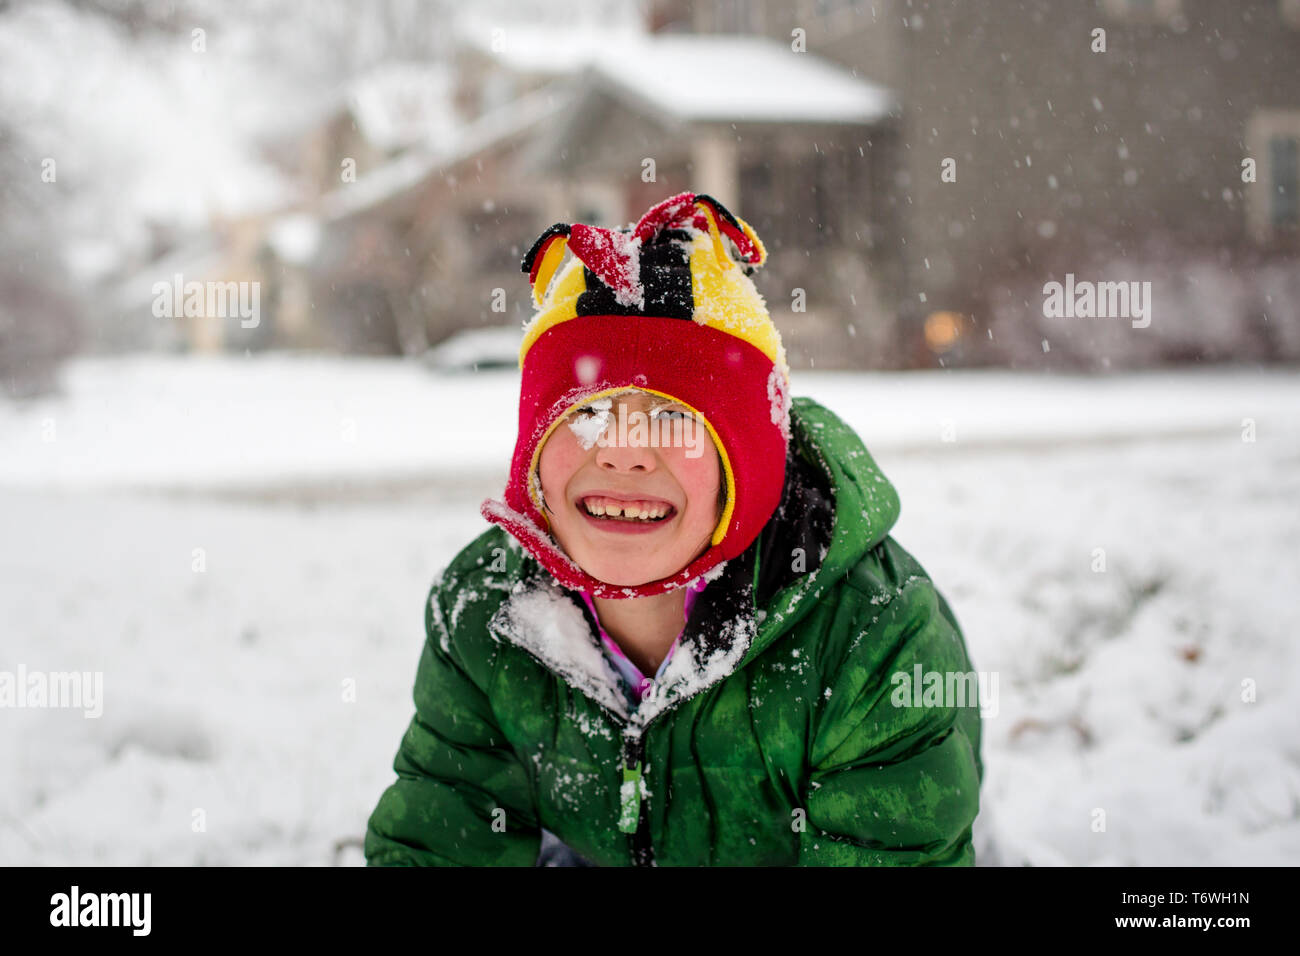 Un gioioso coperte di neve bambino in un fuzzy hat gioca in una tempesta di neve Foto Stock